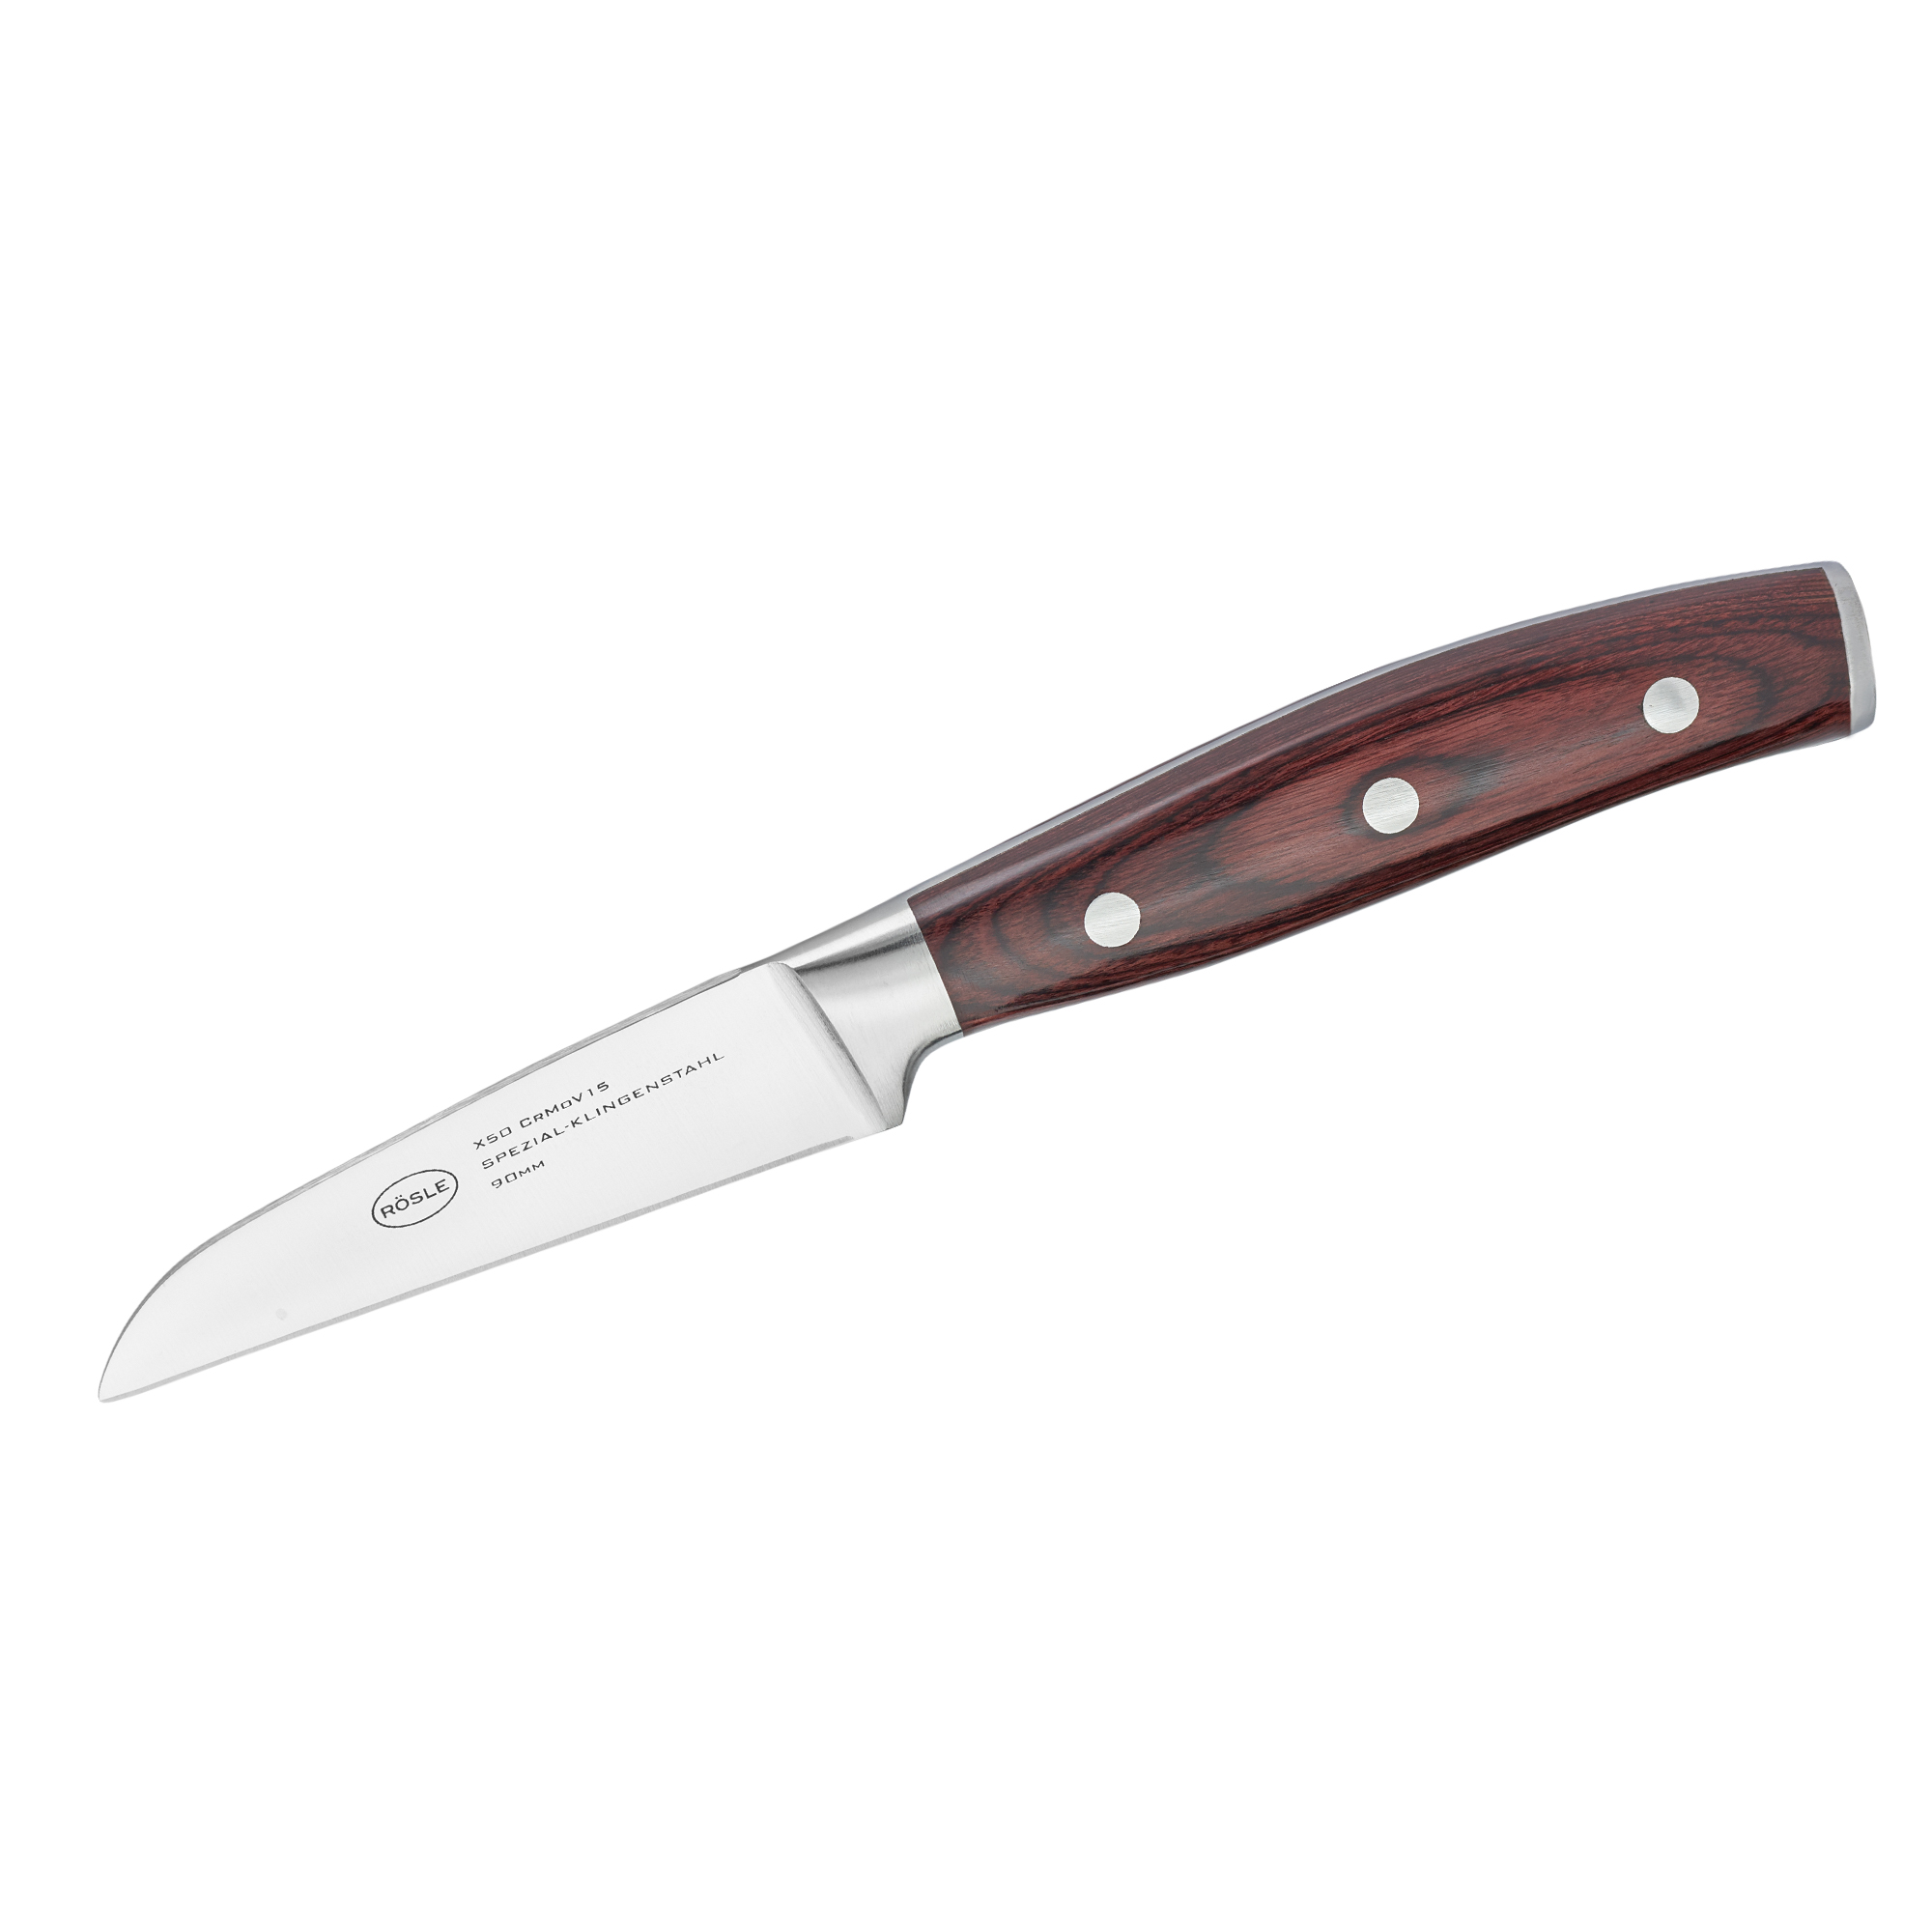 Vegetable knife Rockwood 9 cm